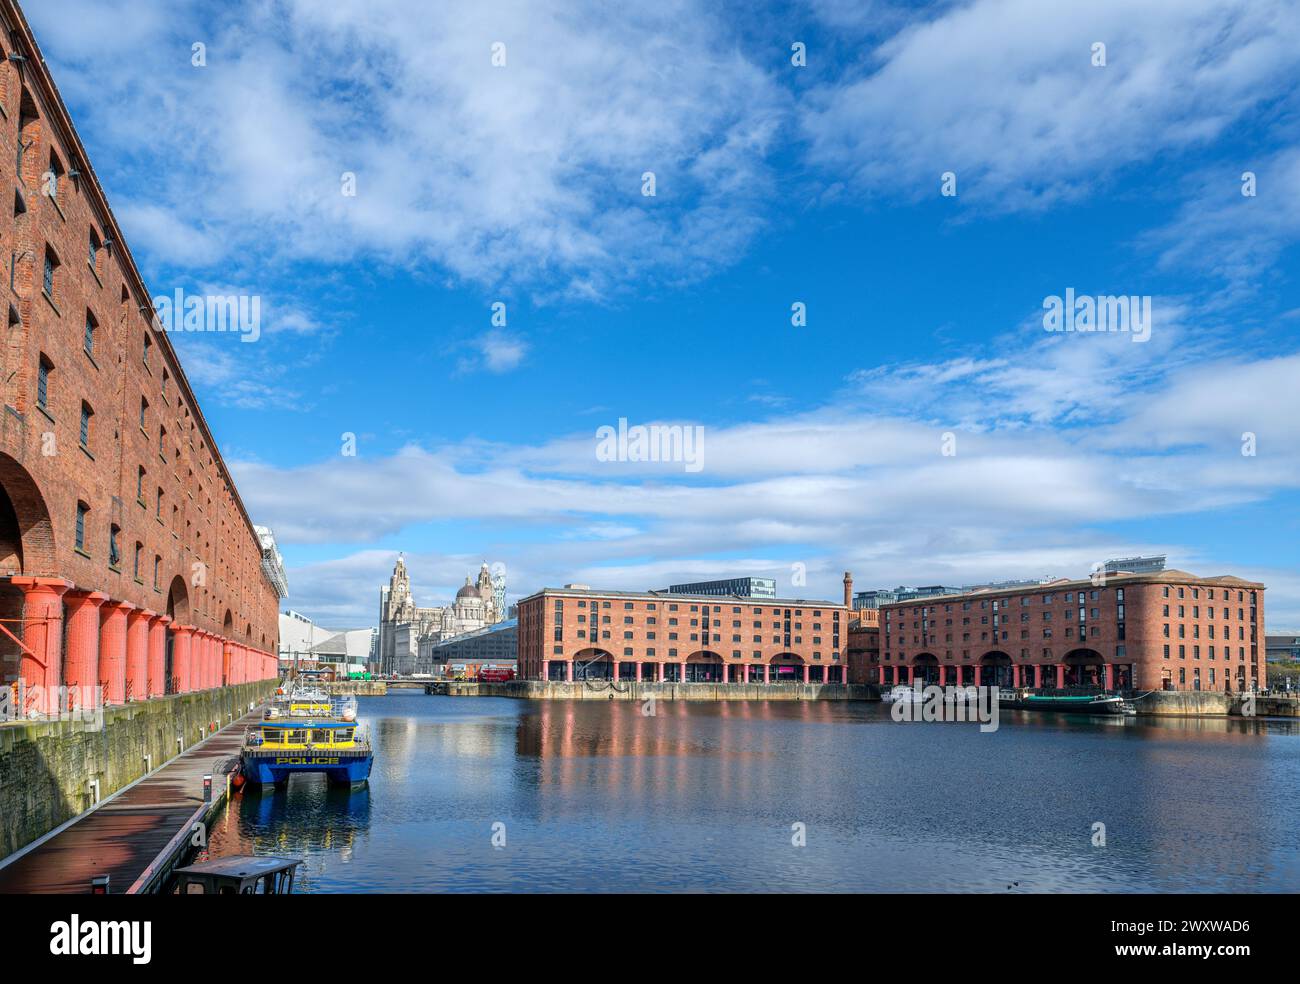 Albert Dock regardant vers les trois grâces et le Musée de Liverpool, Liverpool, Merseyside, Angleterre, Royaume-Uni Banque D'Images